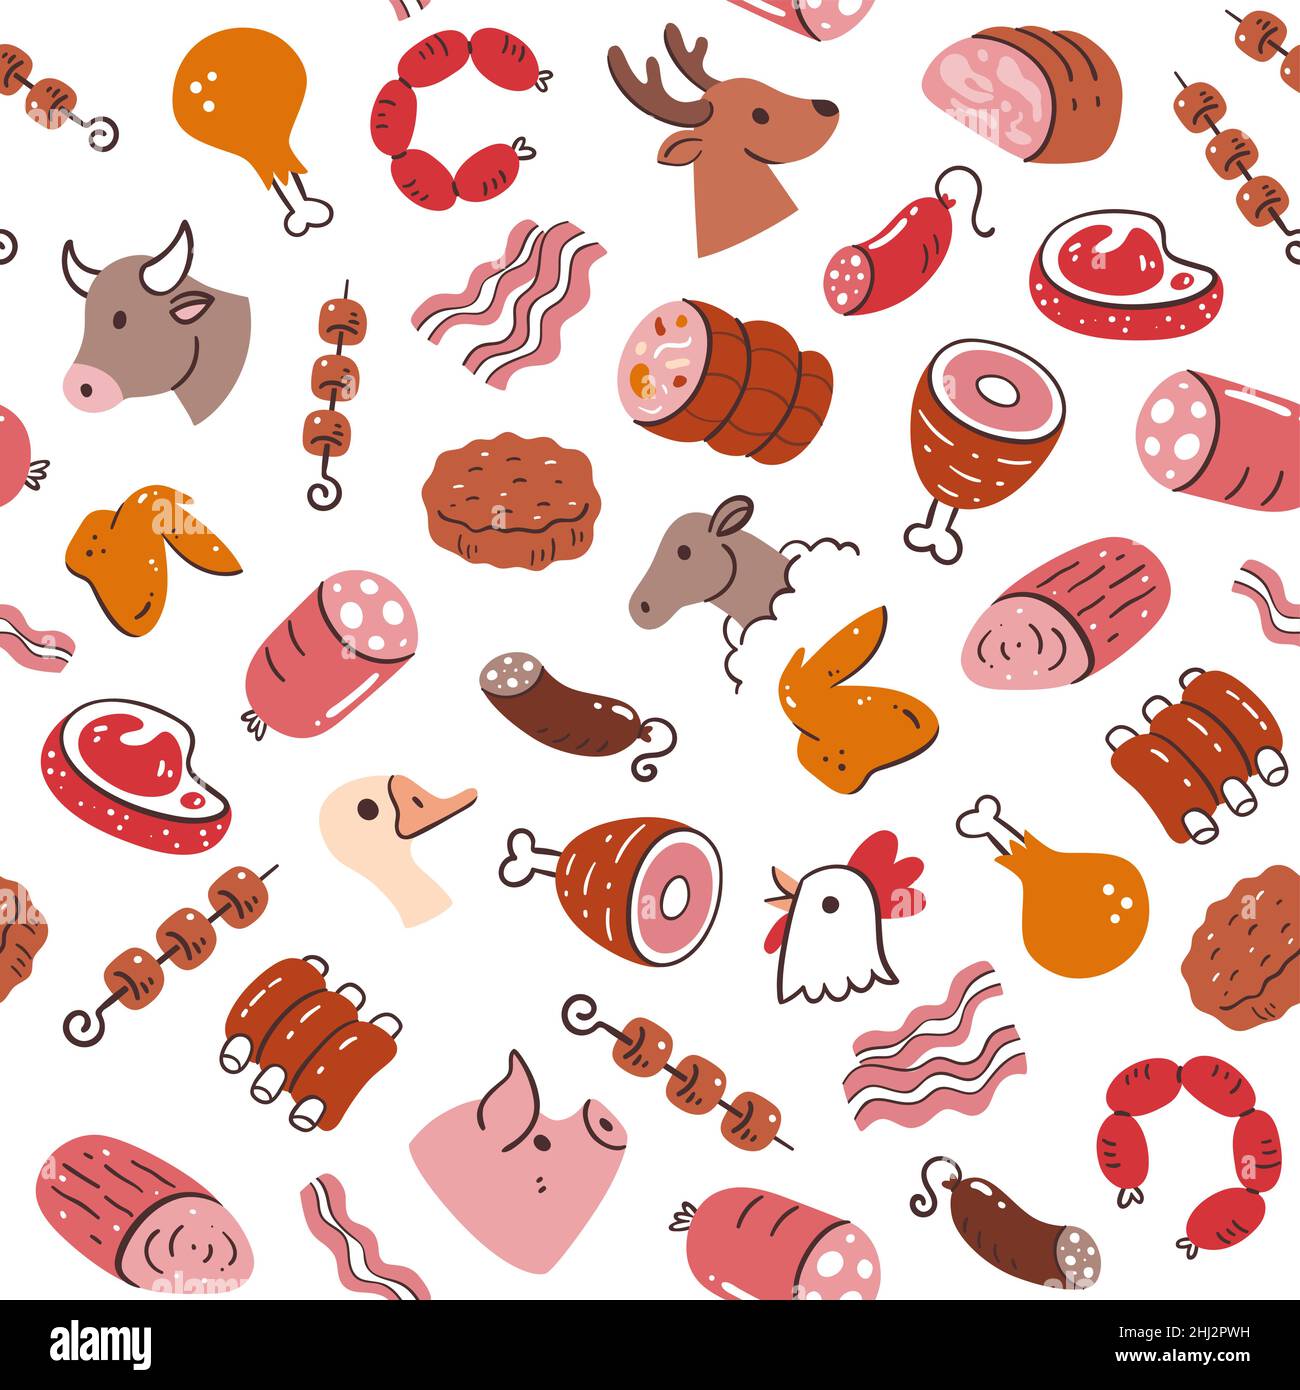 Fleisch nahtlos Muster. Fleischstücke und Fleischprodukte. Abbildung: Zutaten für das Kochen. Isolierte, farbenfrohe, handgezeichnete Zutaten auf Weiß Stock Vektor